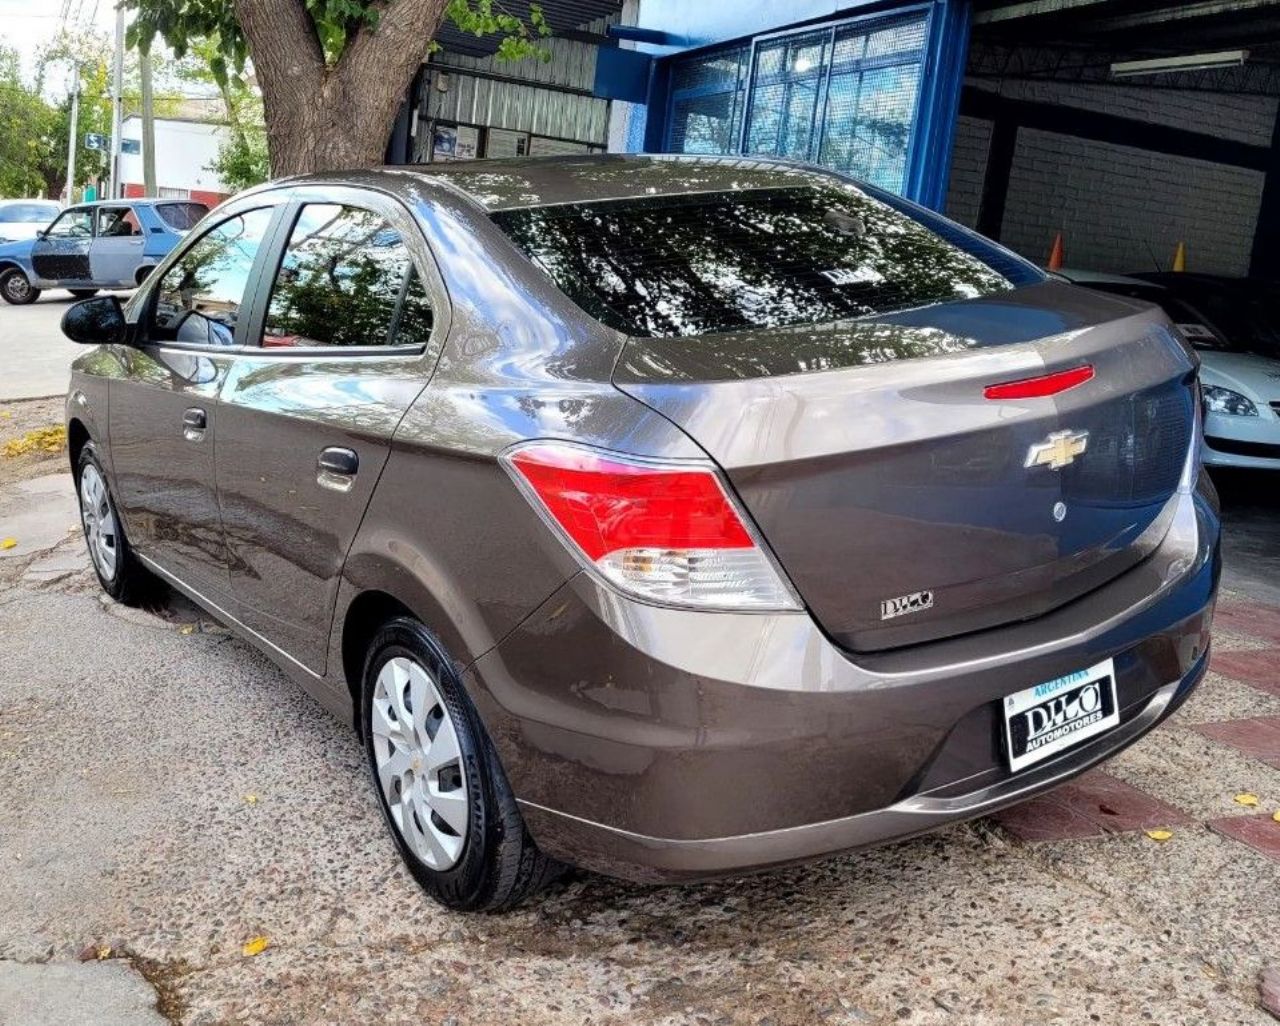 Chevrolet Prisma Usado Financiado en Mendoza, deRuedas